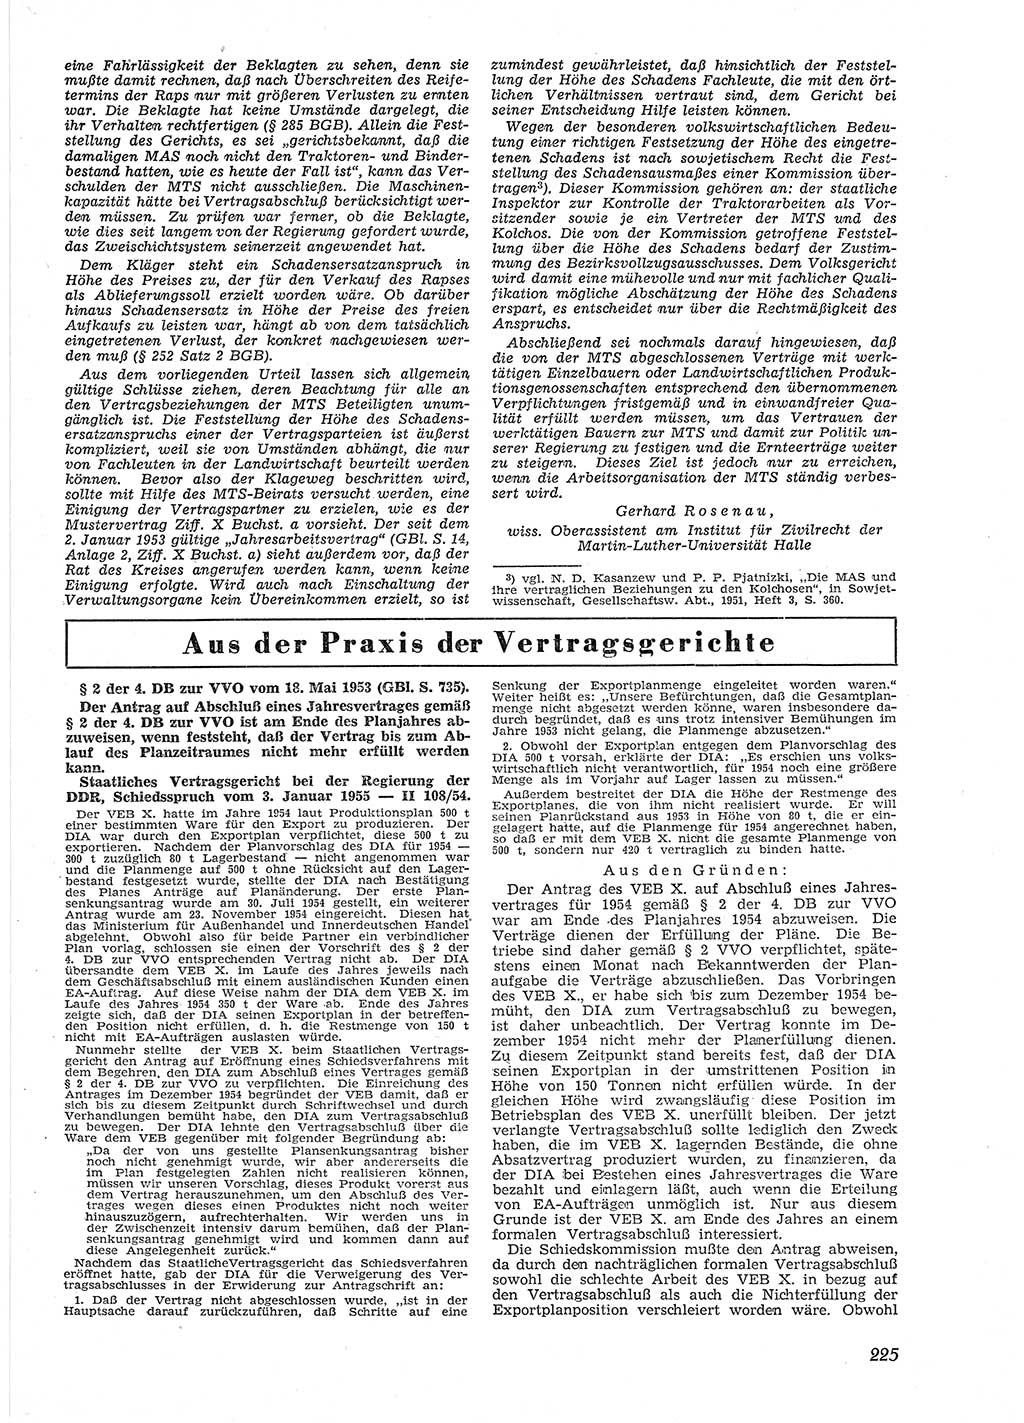 Neue Justiz (NJ), Zeitschrift für Recht und Rechtswissenschaft [Deutsche Demokratische Republik (DDR)], 9. Jahrgang 1955, Seite 225 (NJ DDR 1955, S. 225)